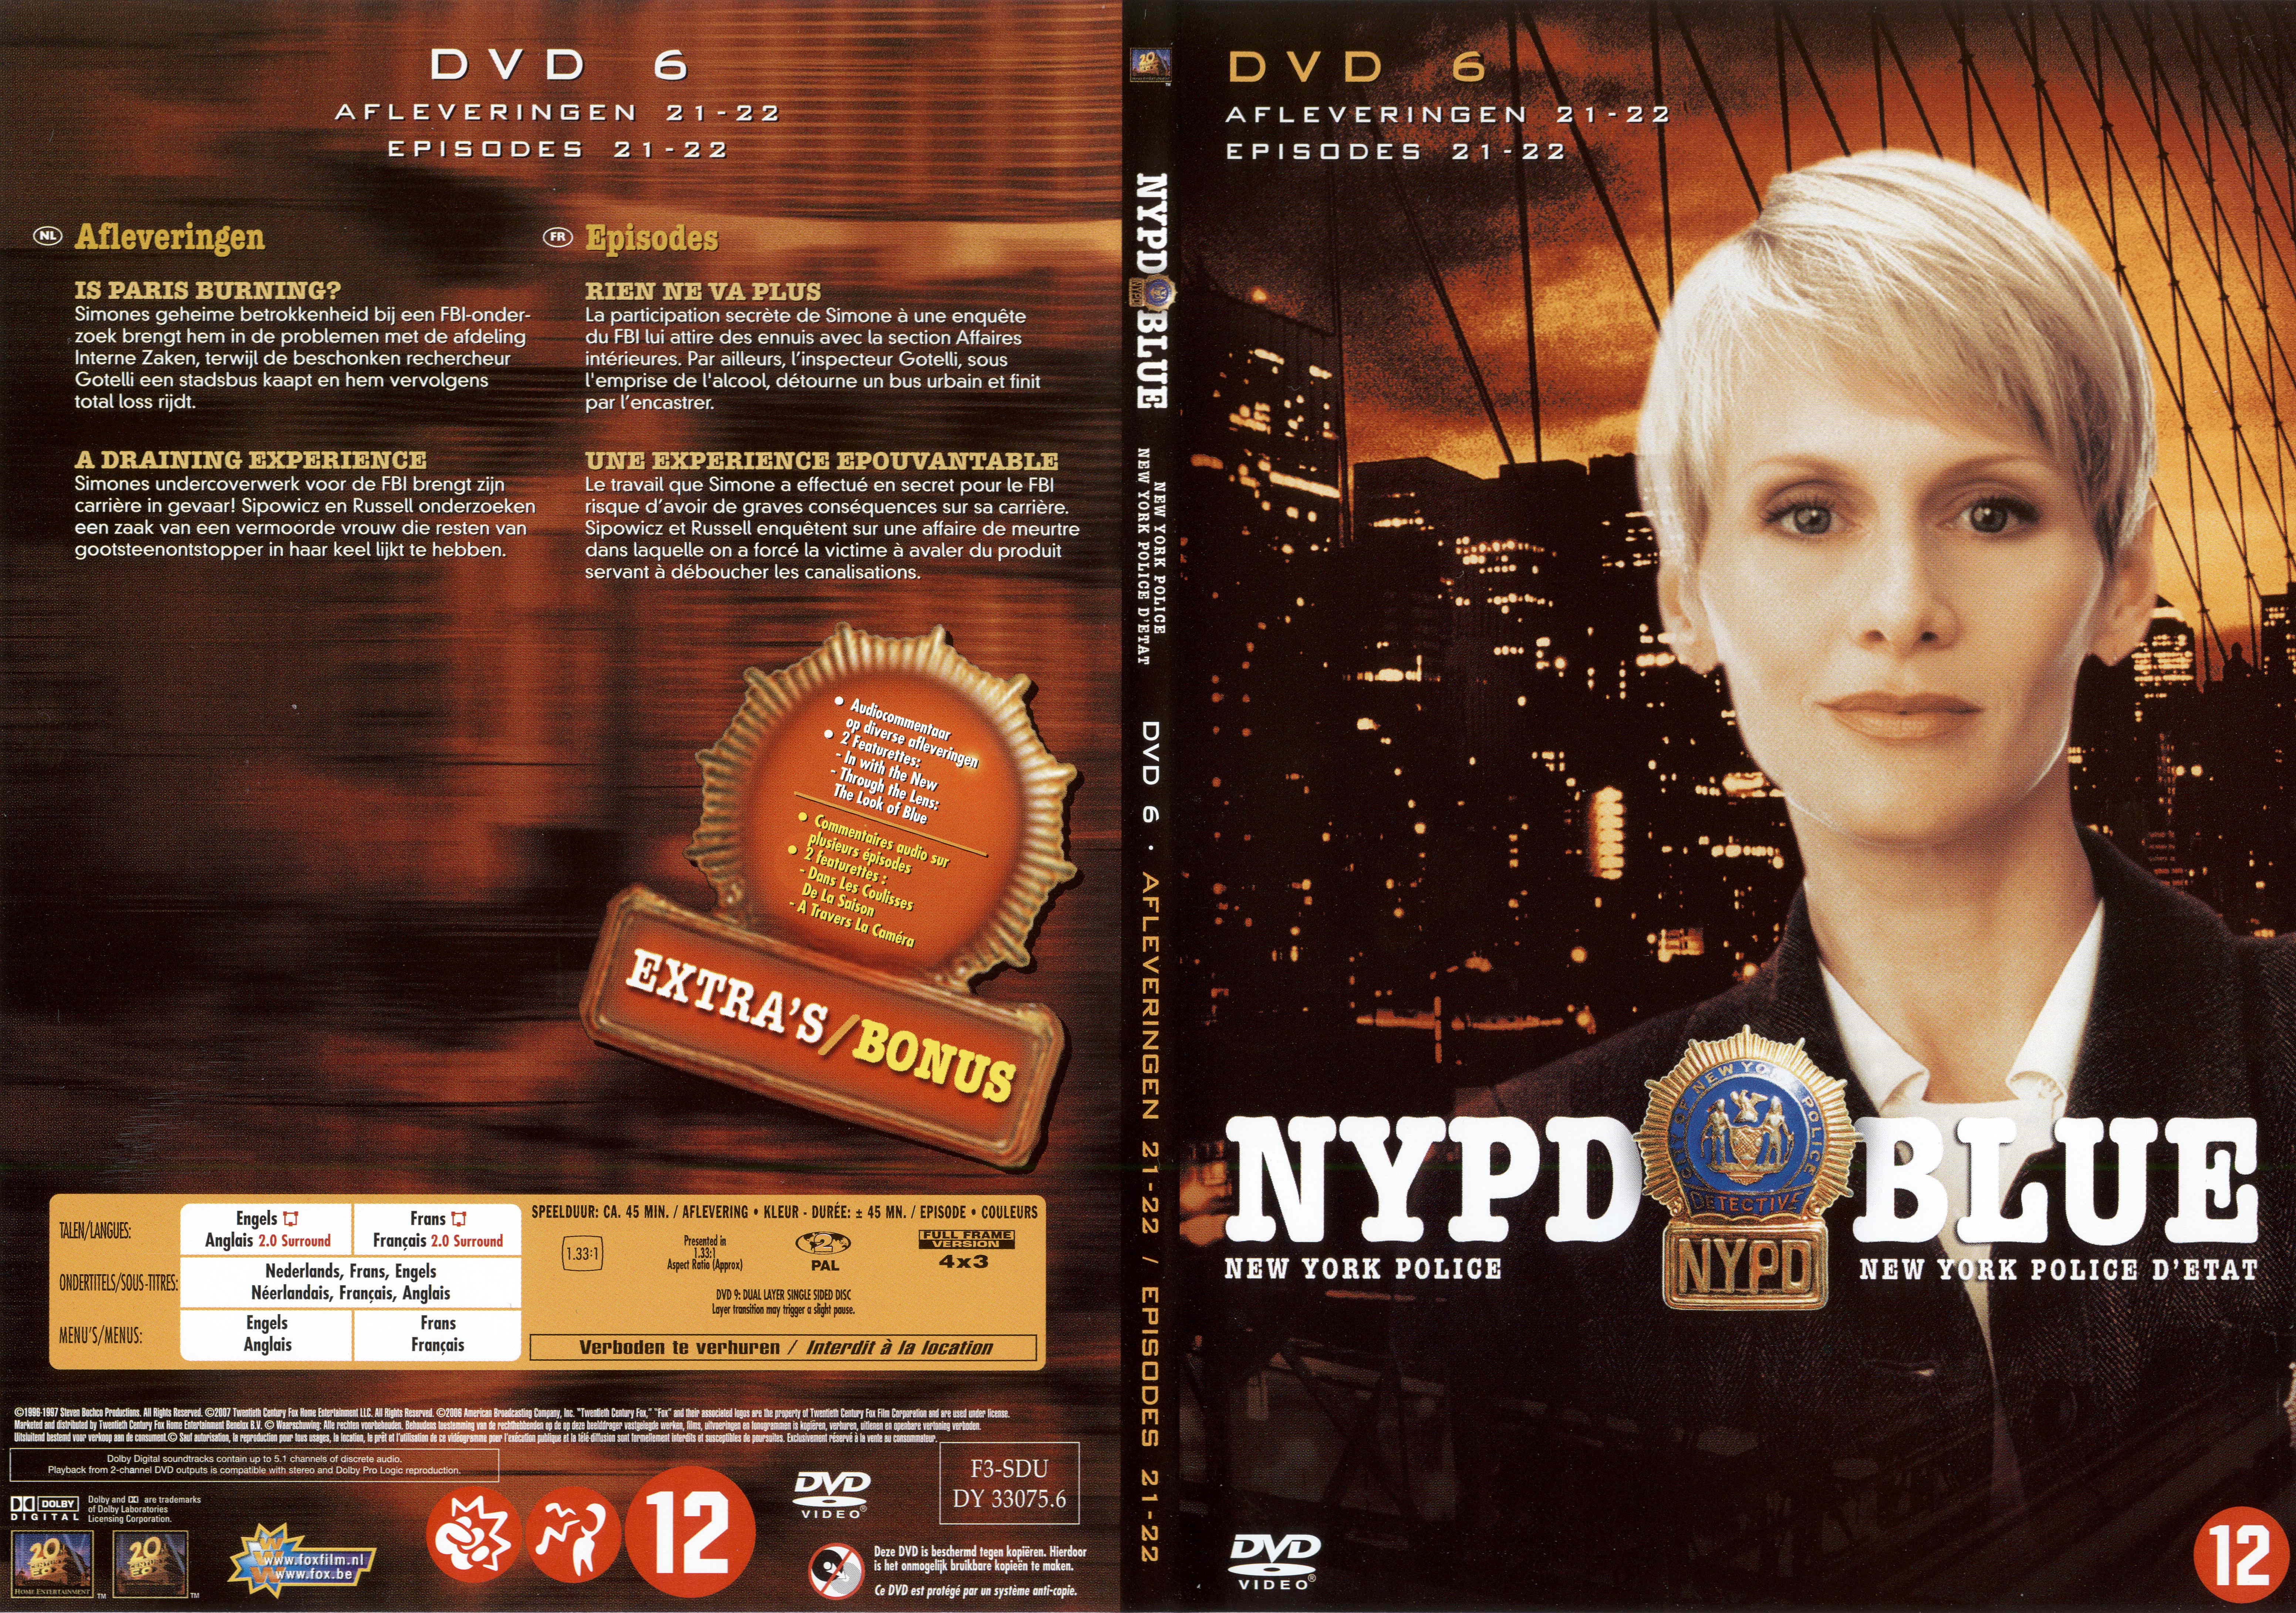 Jaquette DVD NYPD Blue saison 04 dvd 06